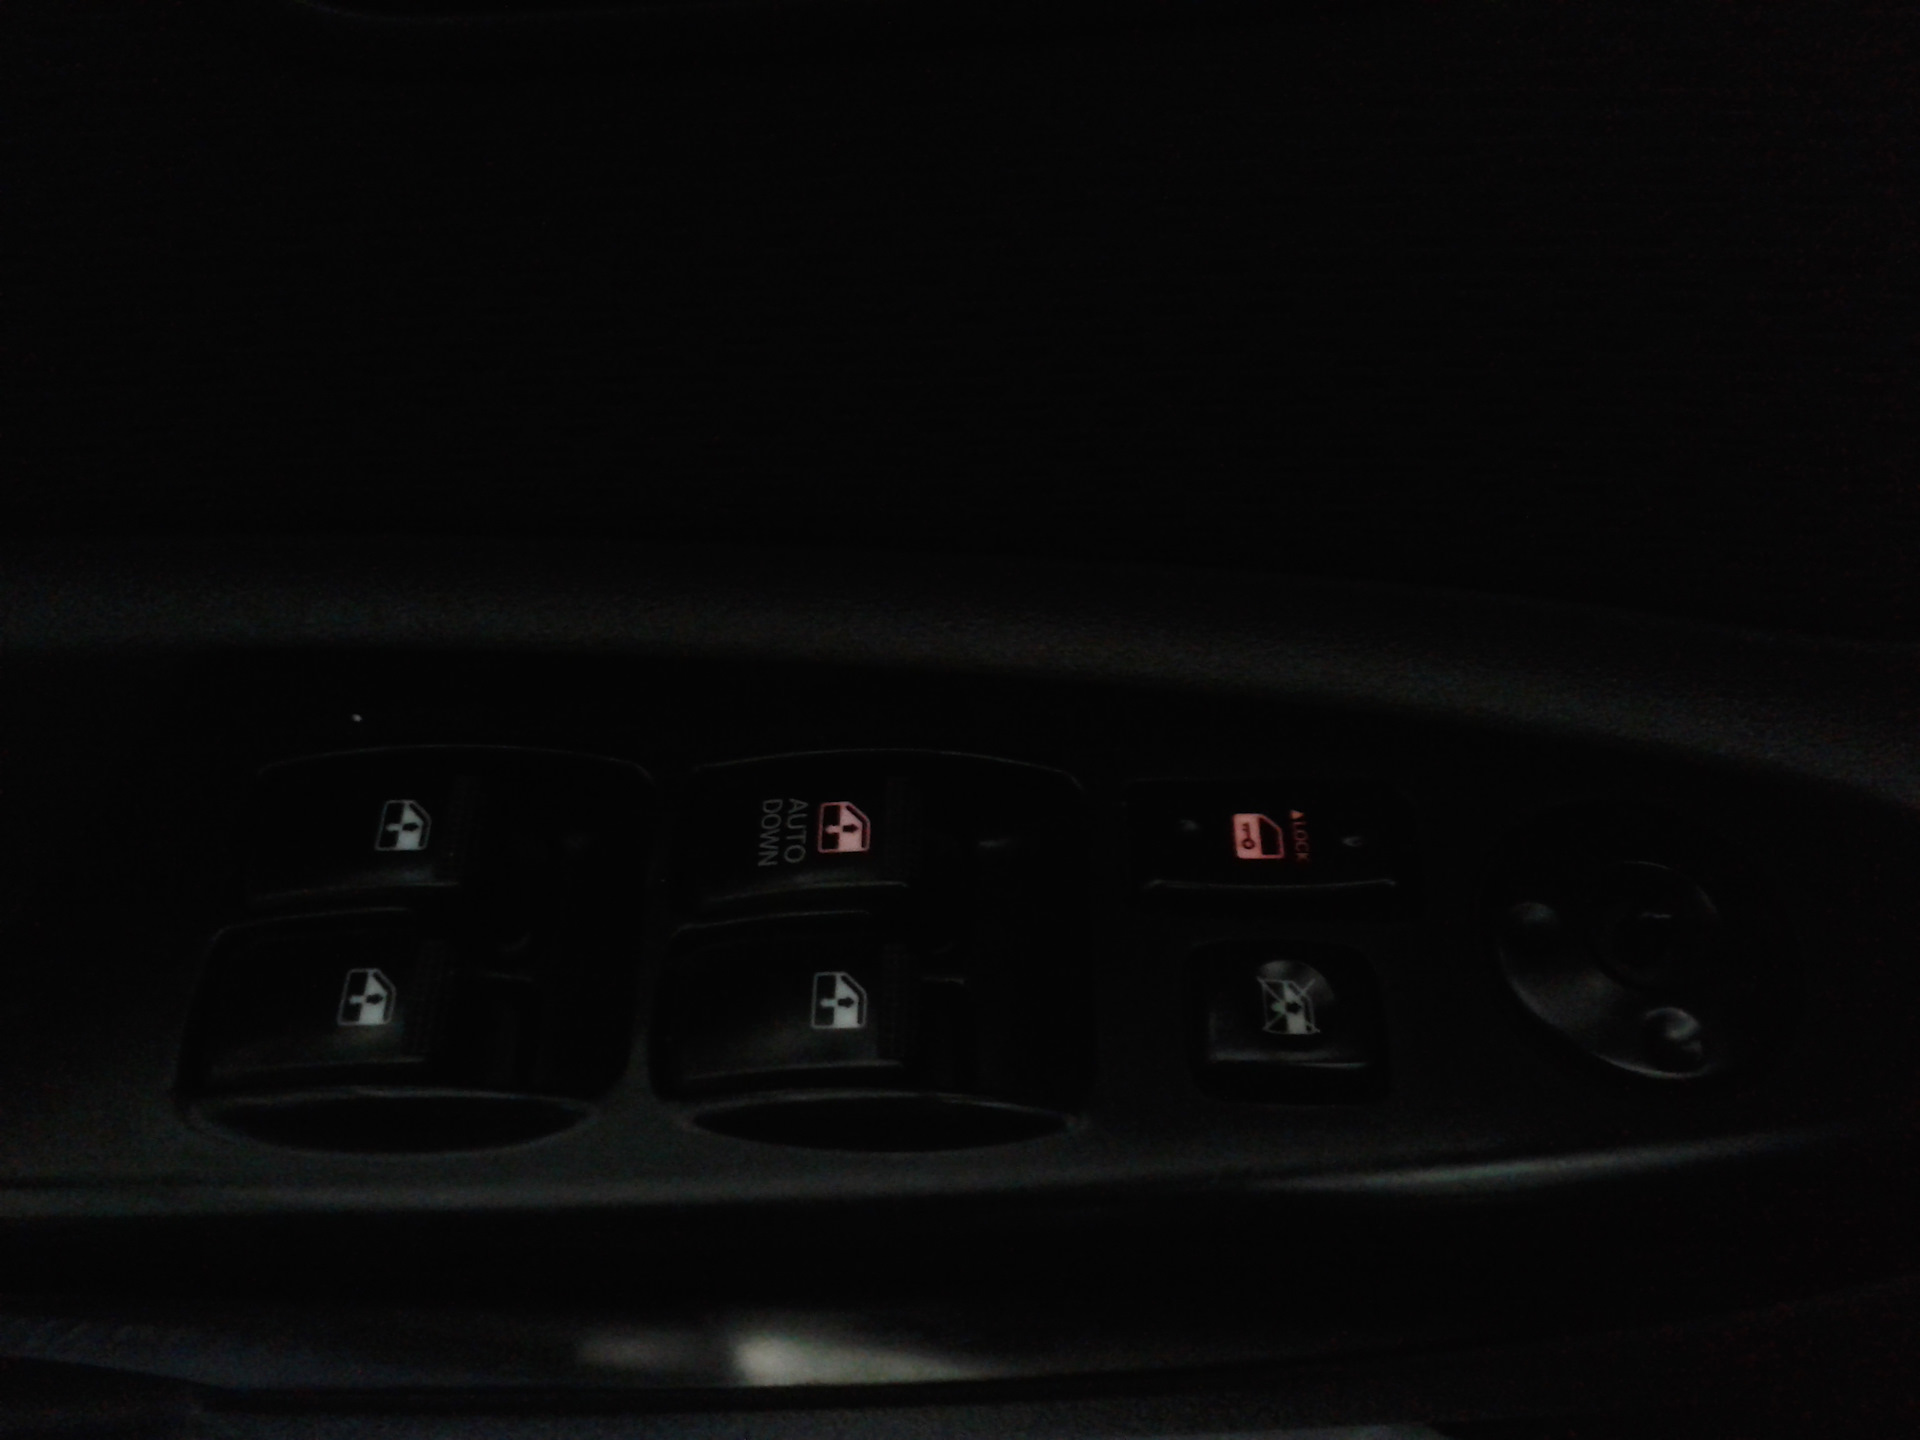 Подсветка кнопок киа. Подсветки кнопок Киа Рио 2. Подсветка кнопок стеклоподъемников Киа Рио 3 2014 года. Подсветка кнопок водительской двери Киа Рио 2. Кнопка стеклоподъемника Киа Рио драйв 2.